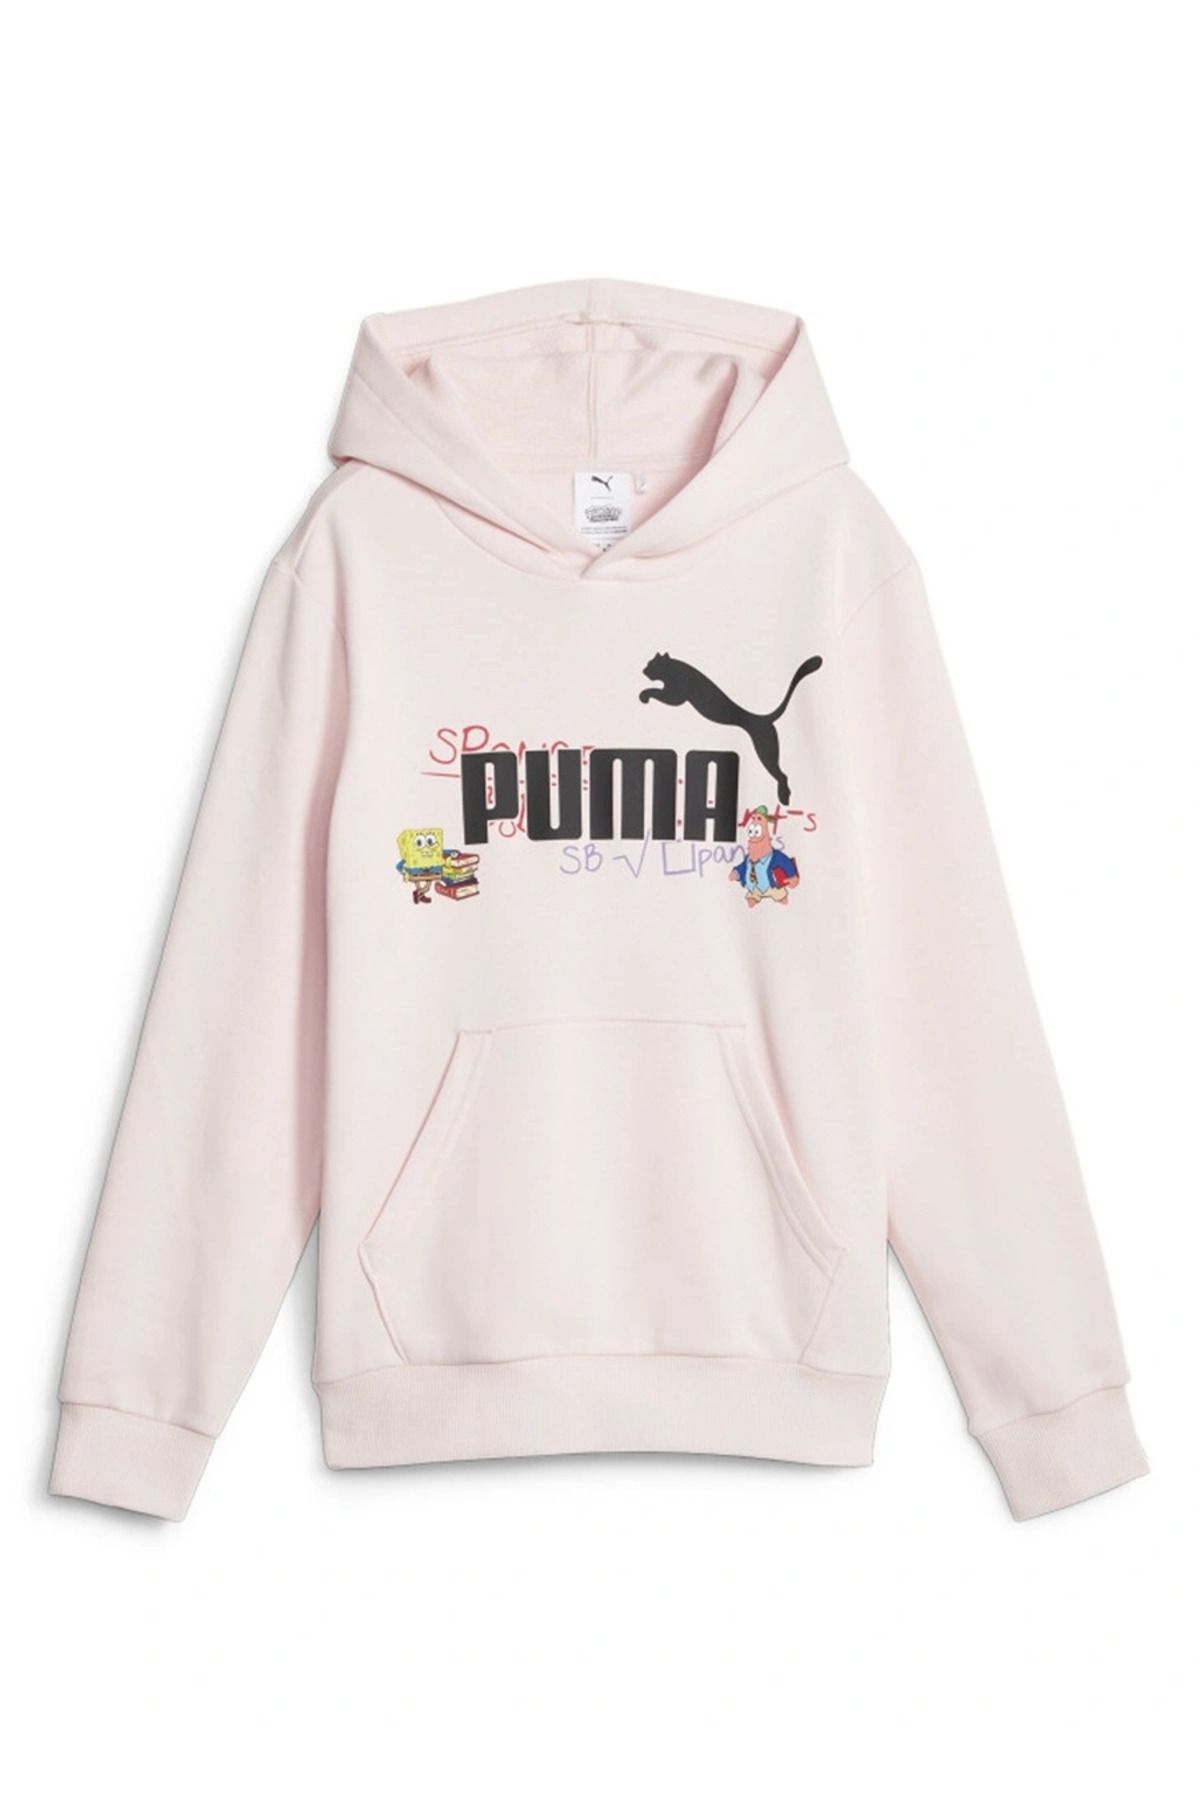 Puma X SPONGEBOB Hoodie TR Frosty Pink 62221324